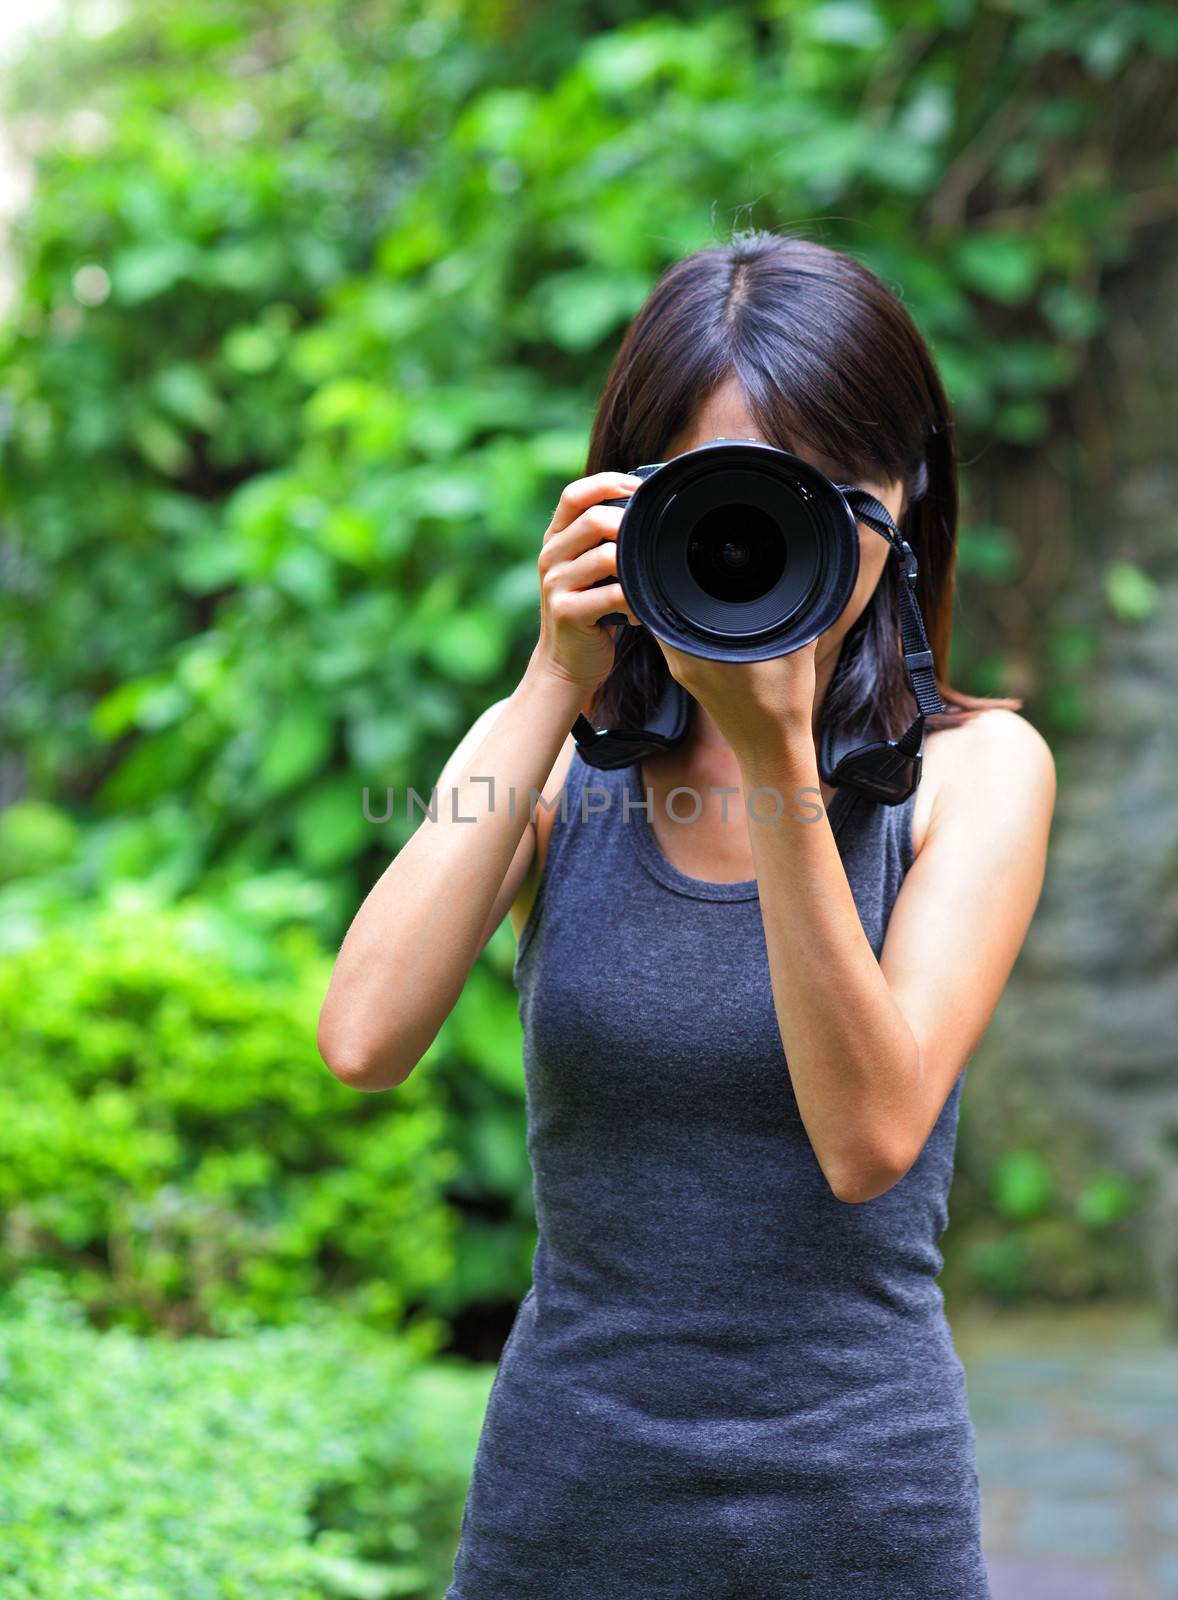 Asian woman taking photo by leungchopan